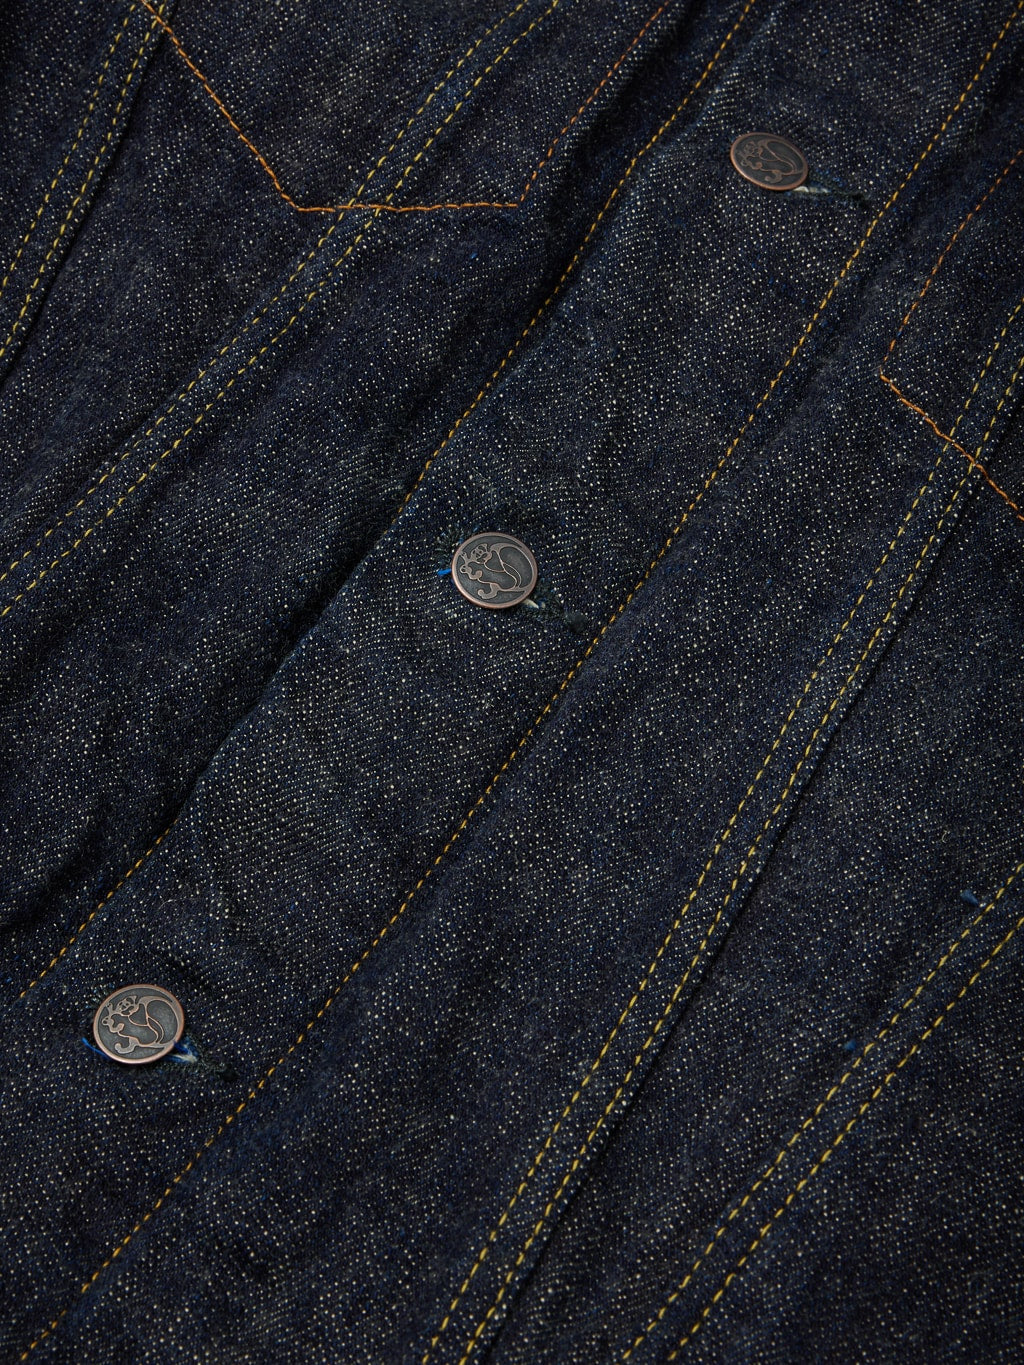 Tanuki zetto benkei type III jacket buttons details